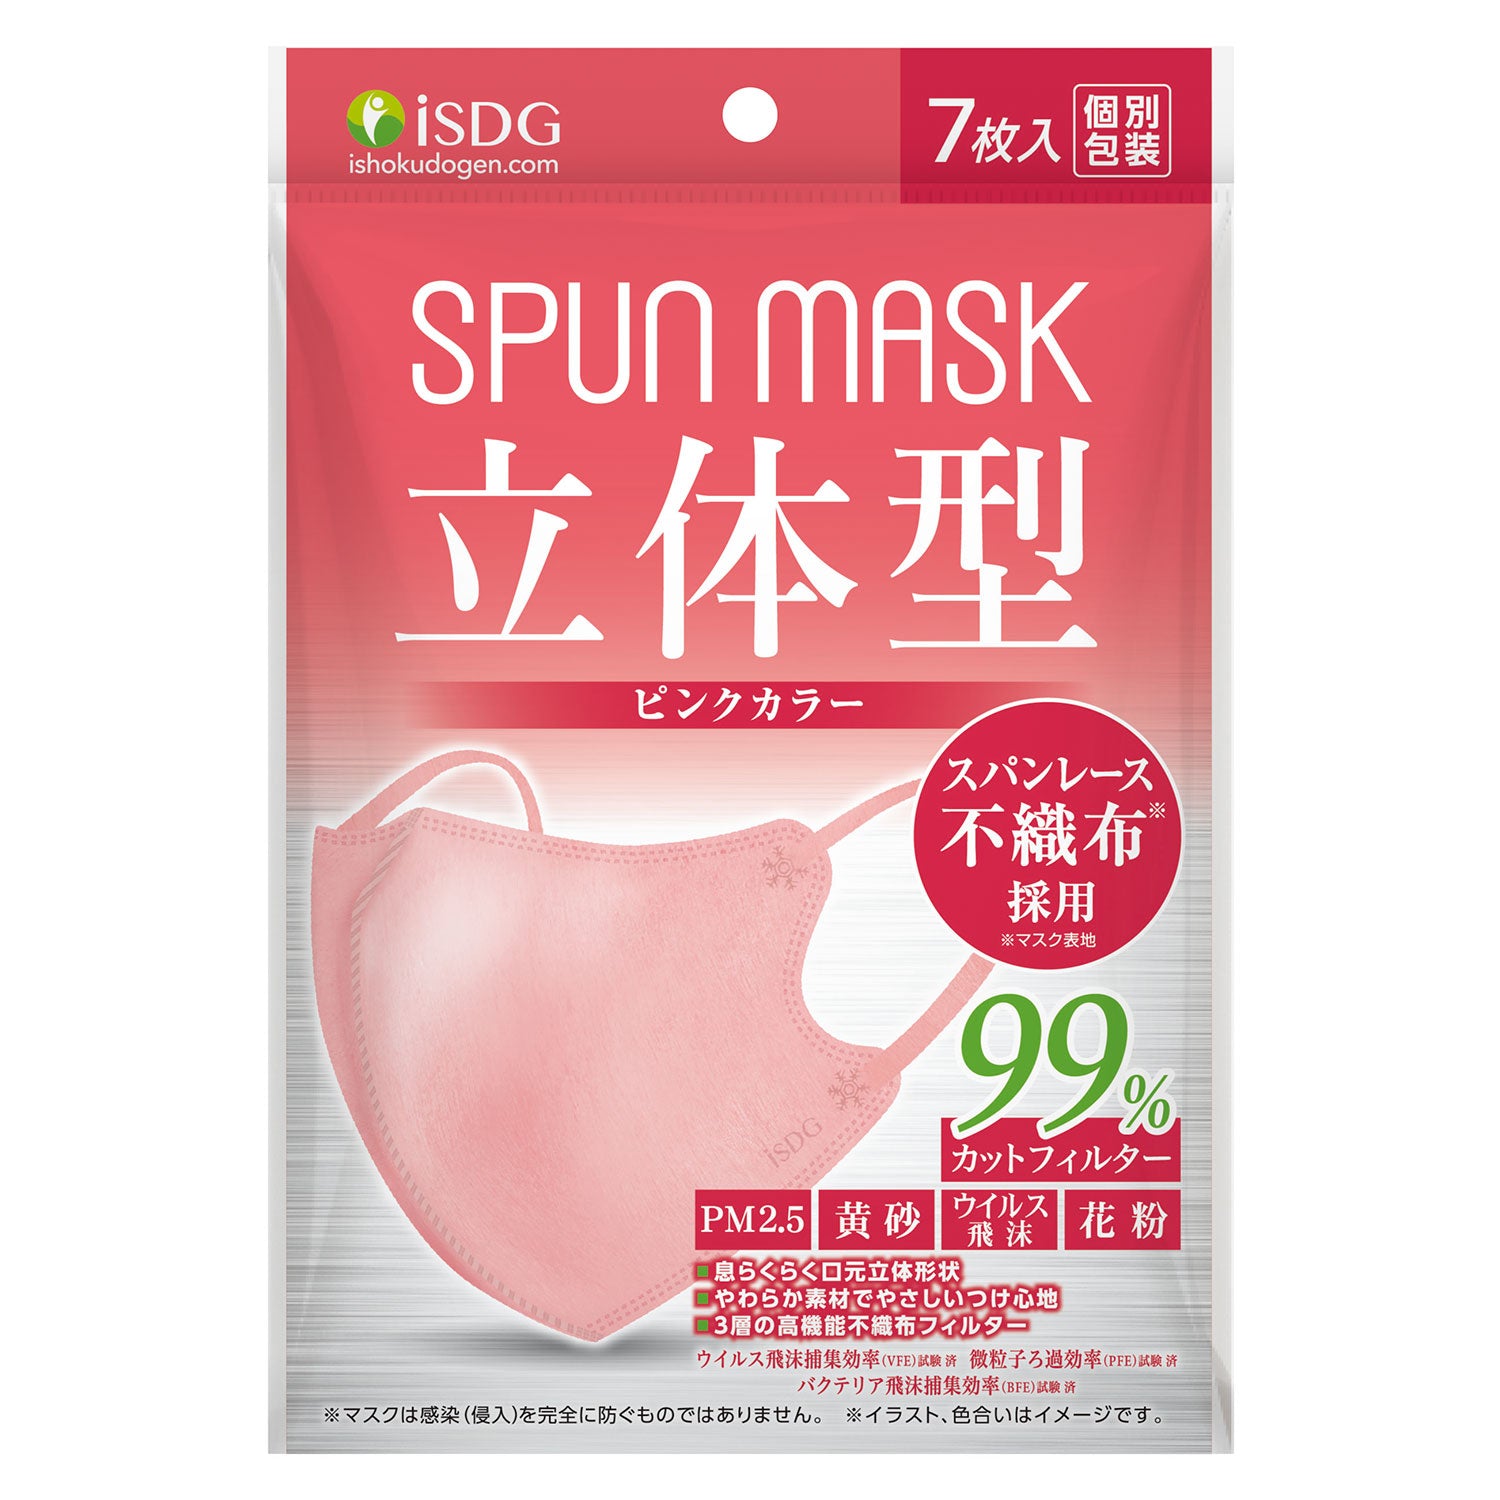 3D Spun Mask Pink 7 Pack Medical Masks ISDG   